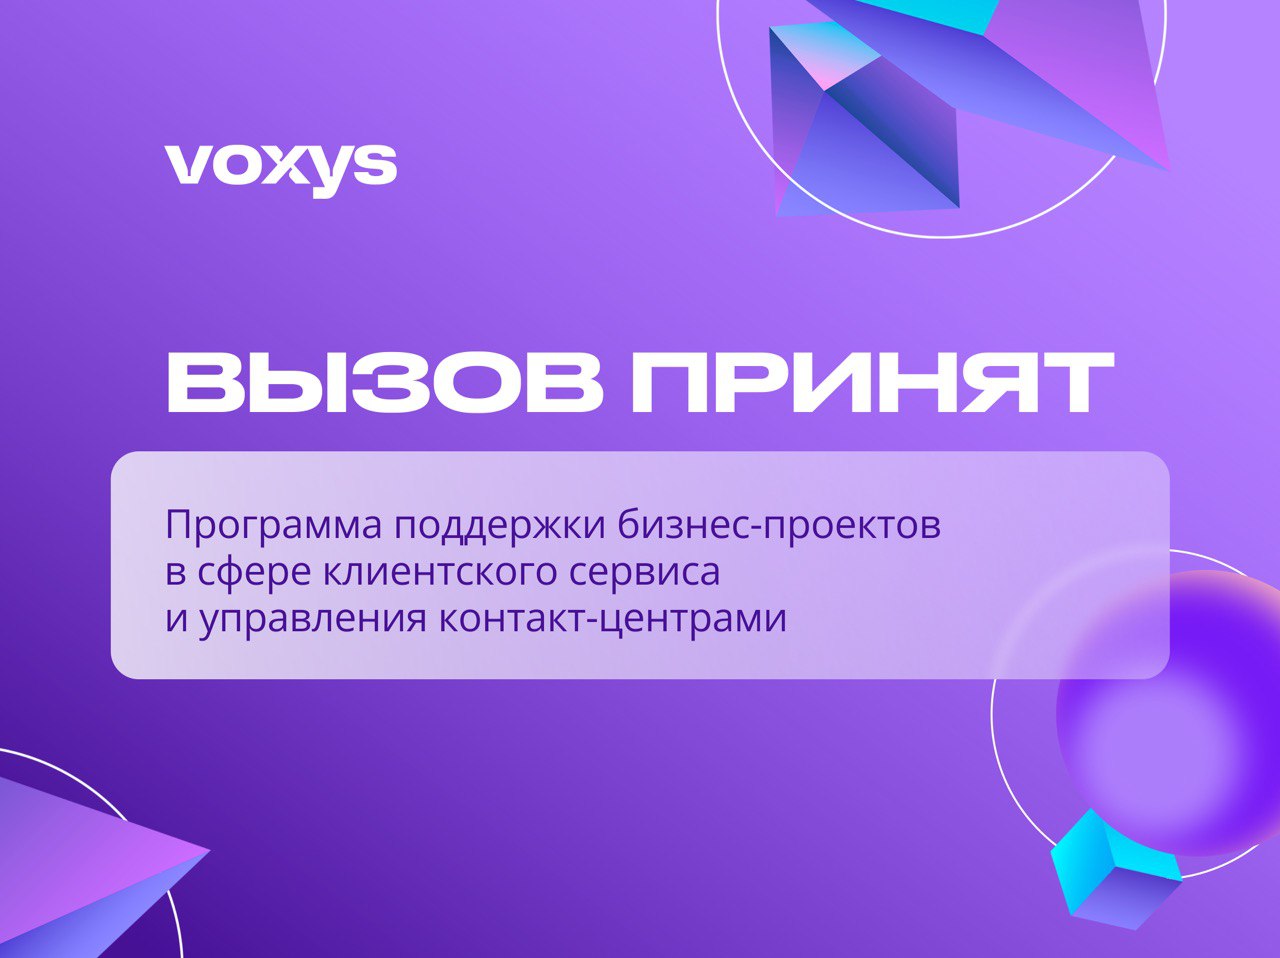 VOXYS запускает программу поддержки бизнес-проектов в сфере дистанционного клиентского сервиса